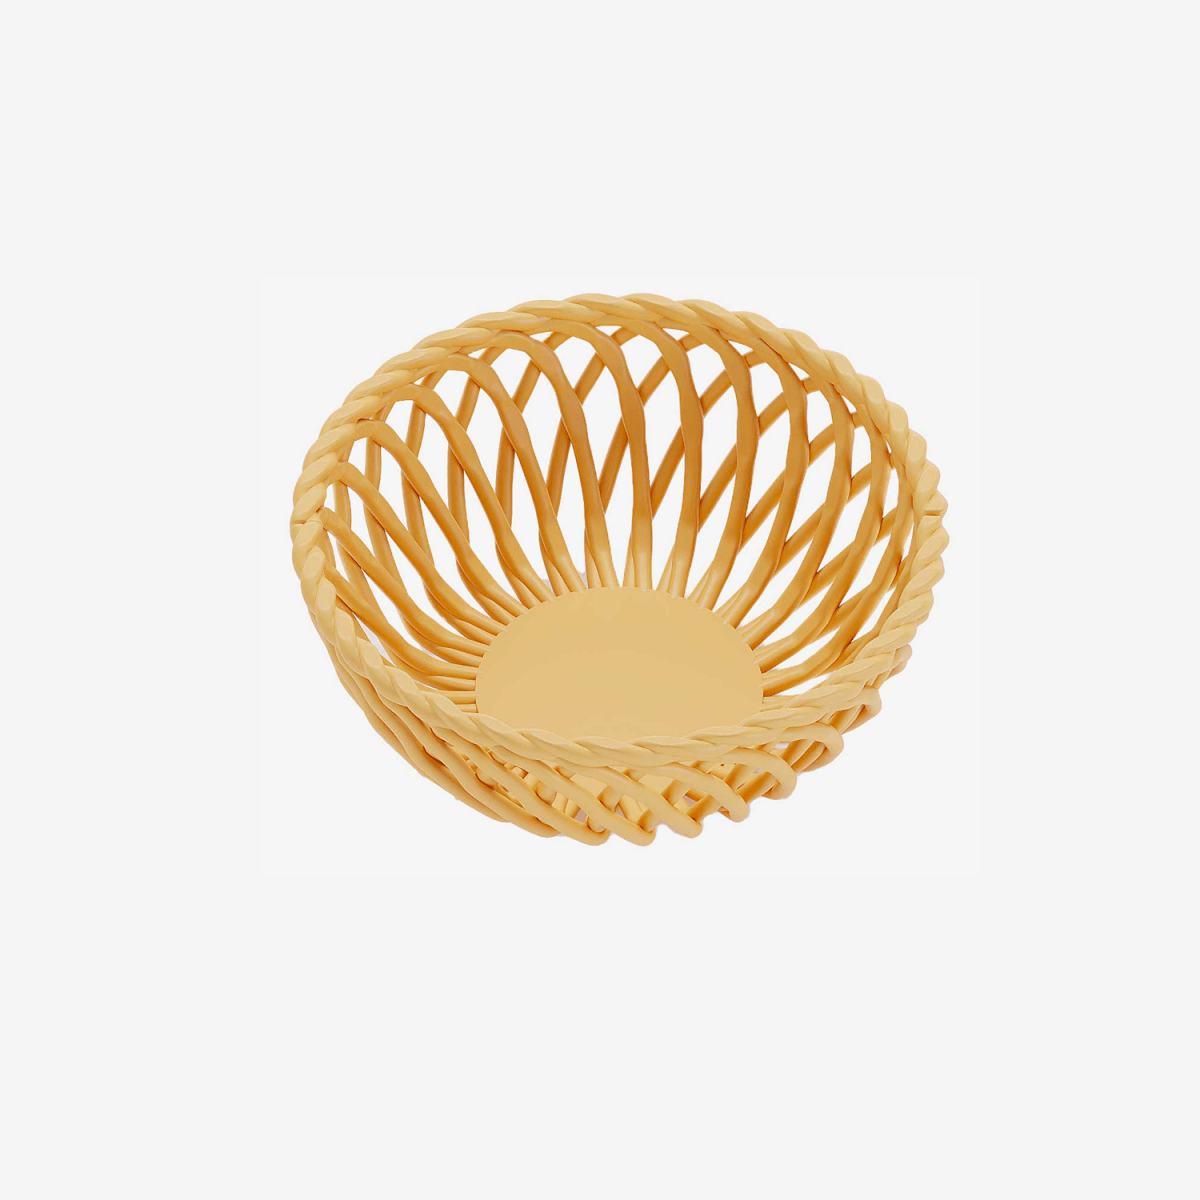 Collection Objet art déco design : Corbeille en céramique torsadée jaune - Potiron Paris, site de déco pas cher